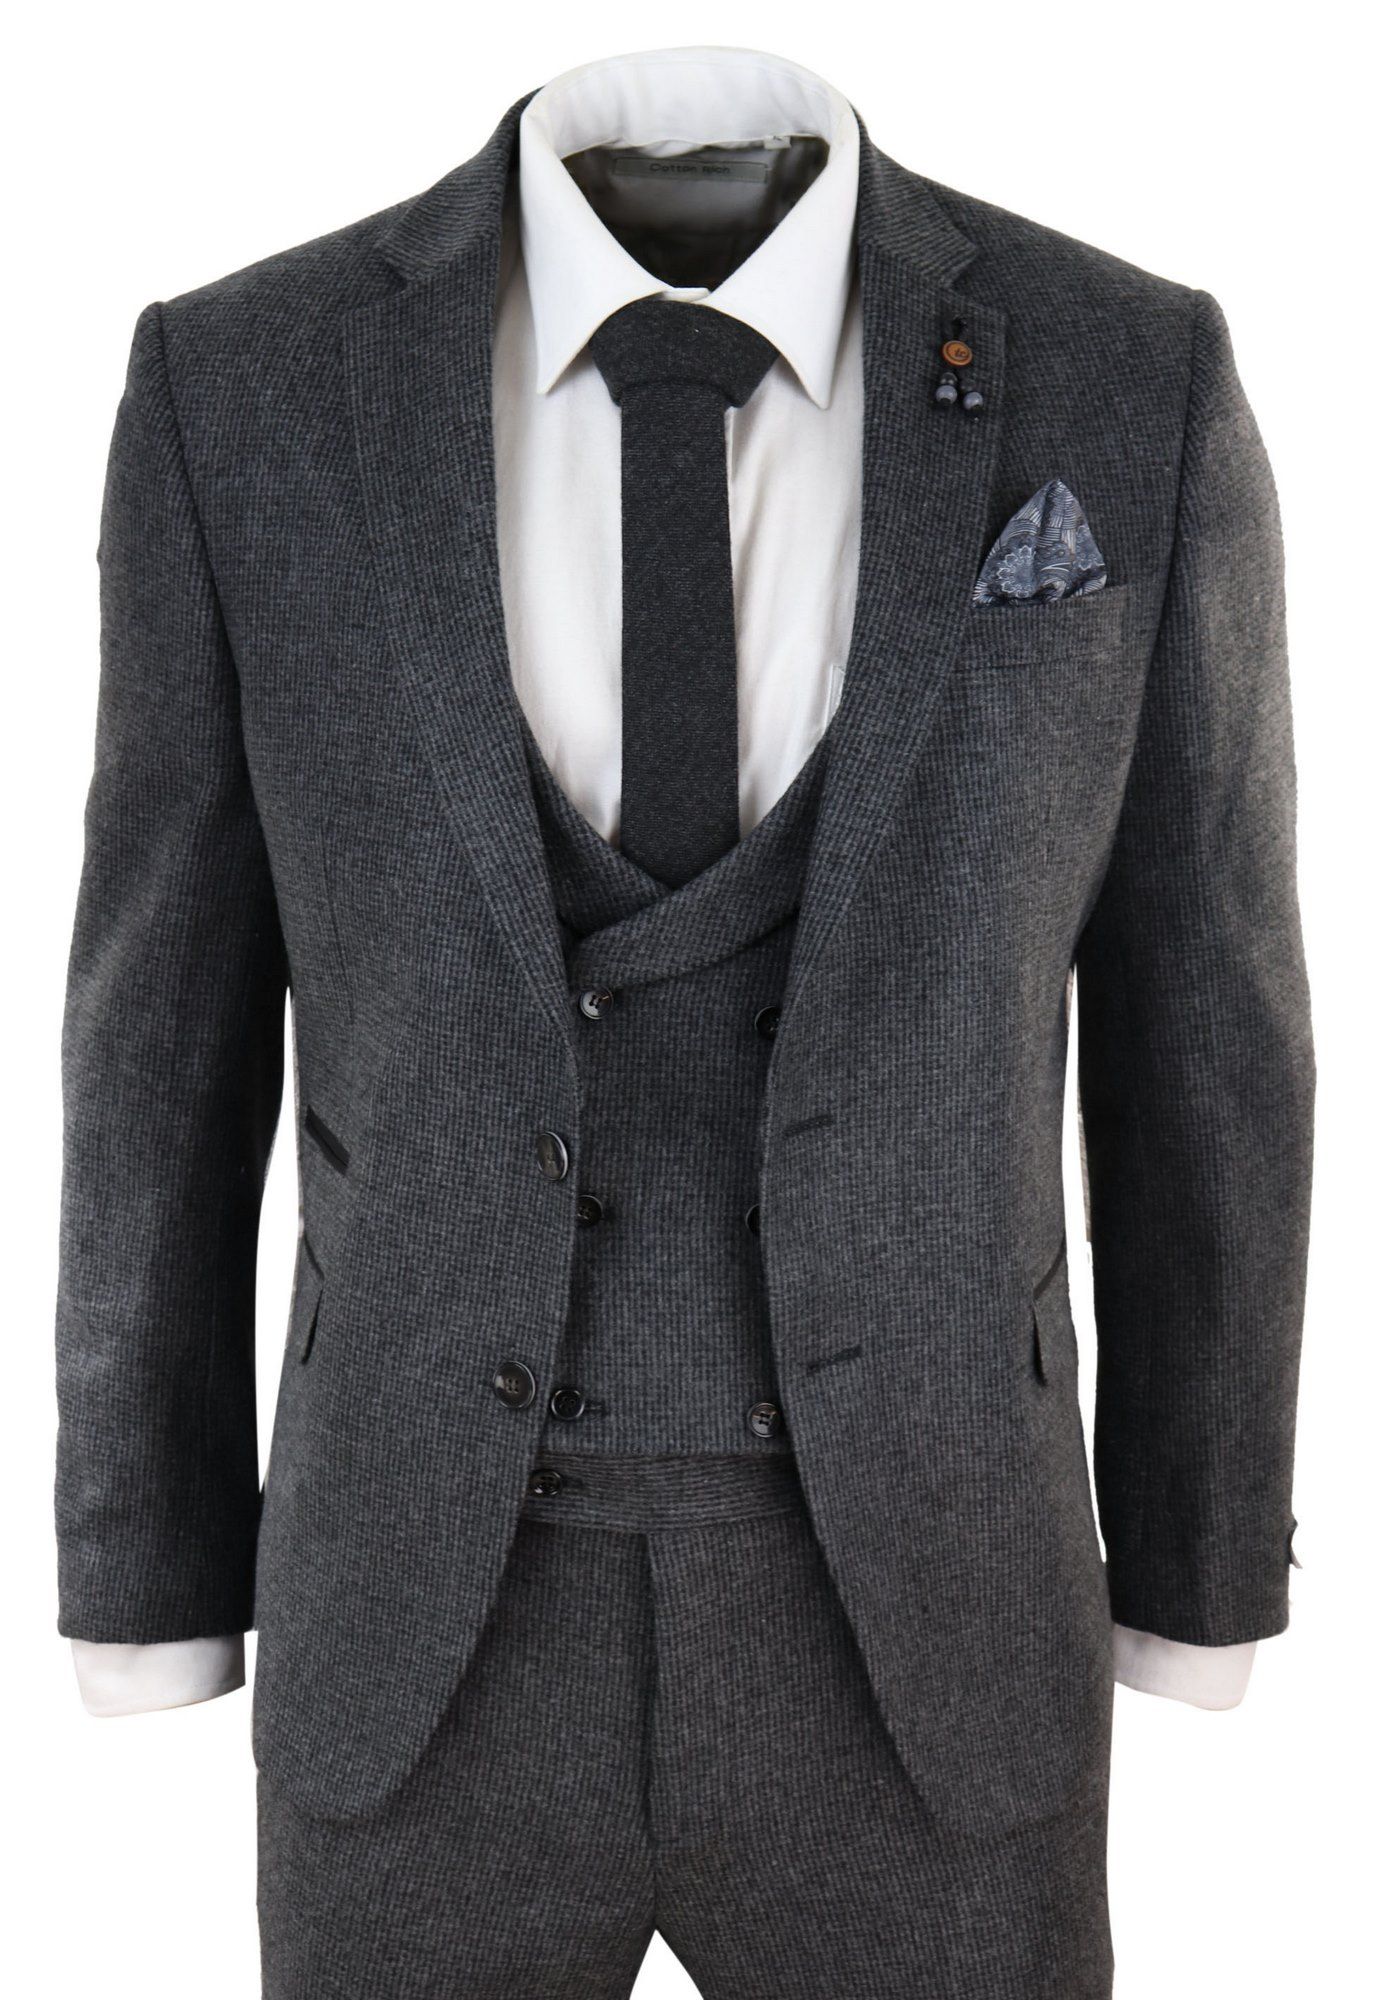 Grey Tweed 3 Piece Suit: Buy Online - Happy Gentleman